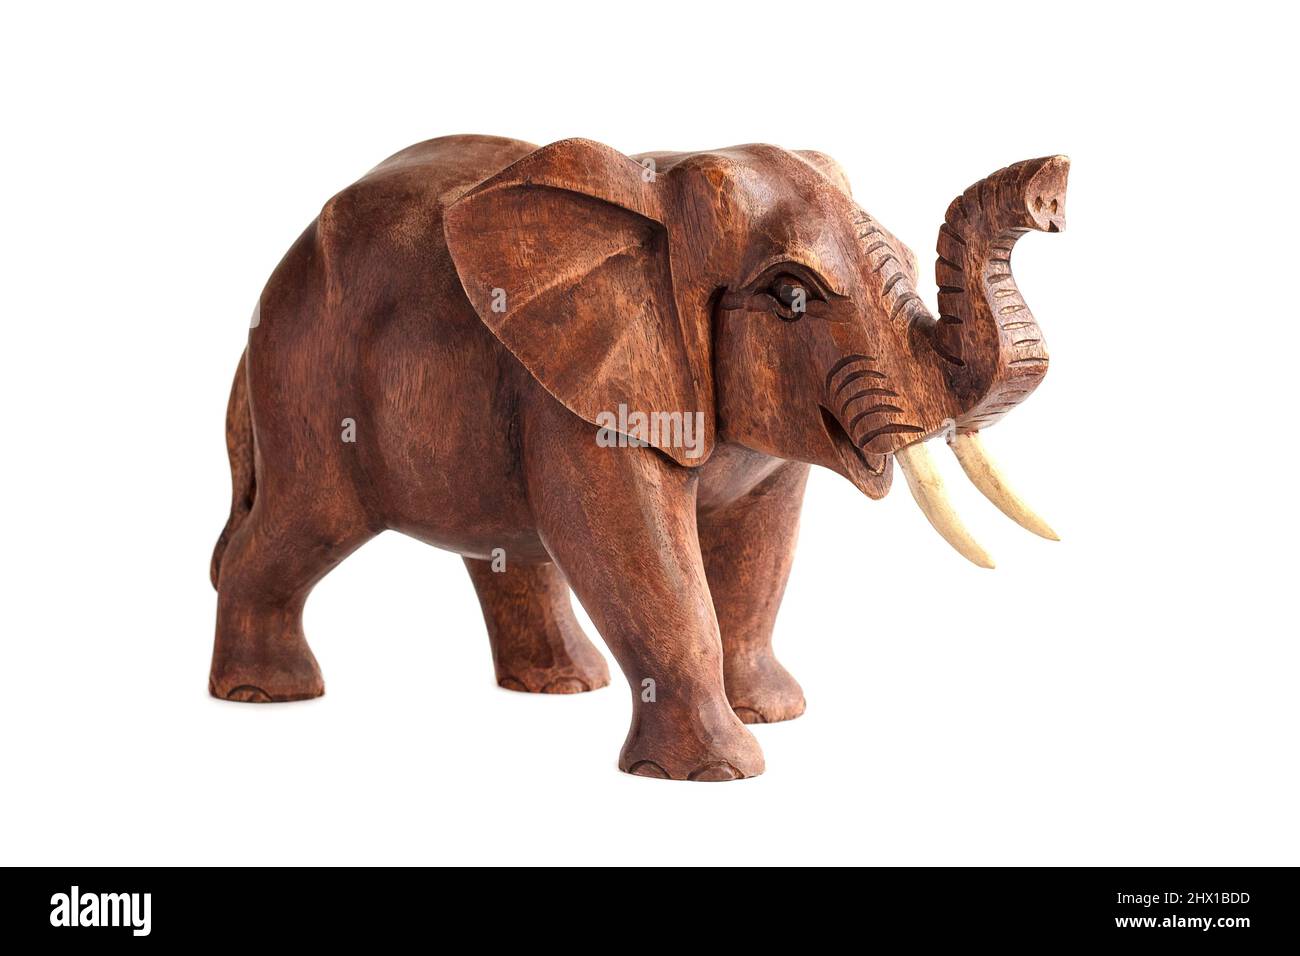 Figure en bois sculpté d'un éléphant avec un tronc élevé au sommet. Isolé sur fond blanc Banque D'Images